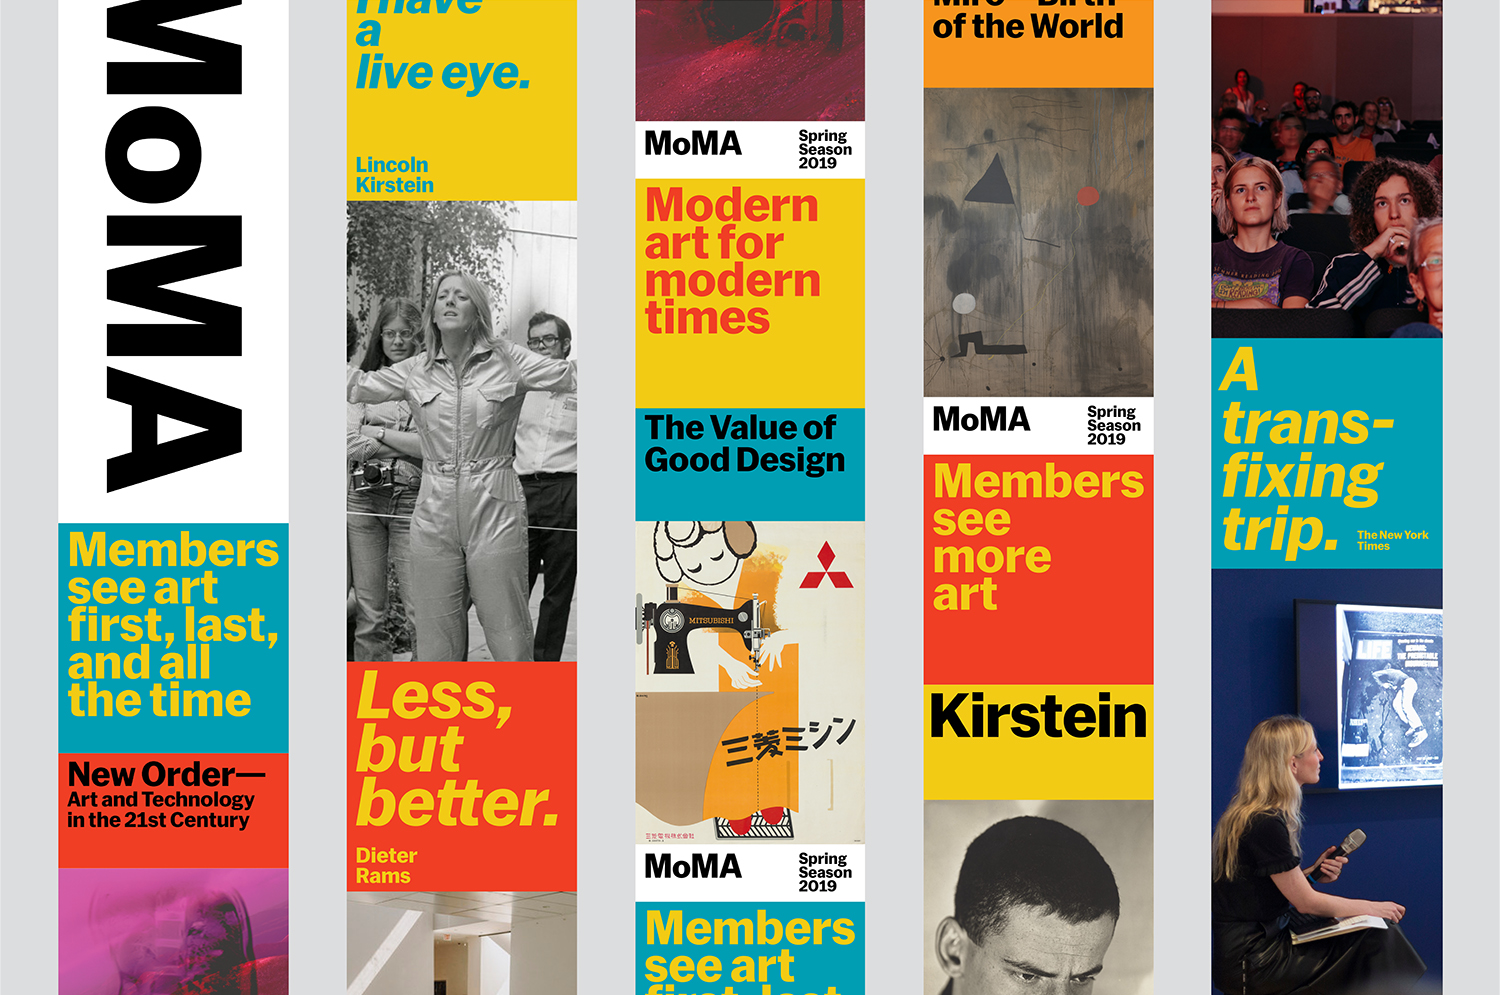 Branding for MoMA 2020 designed by New York-based Order, design, print, web design